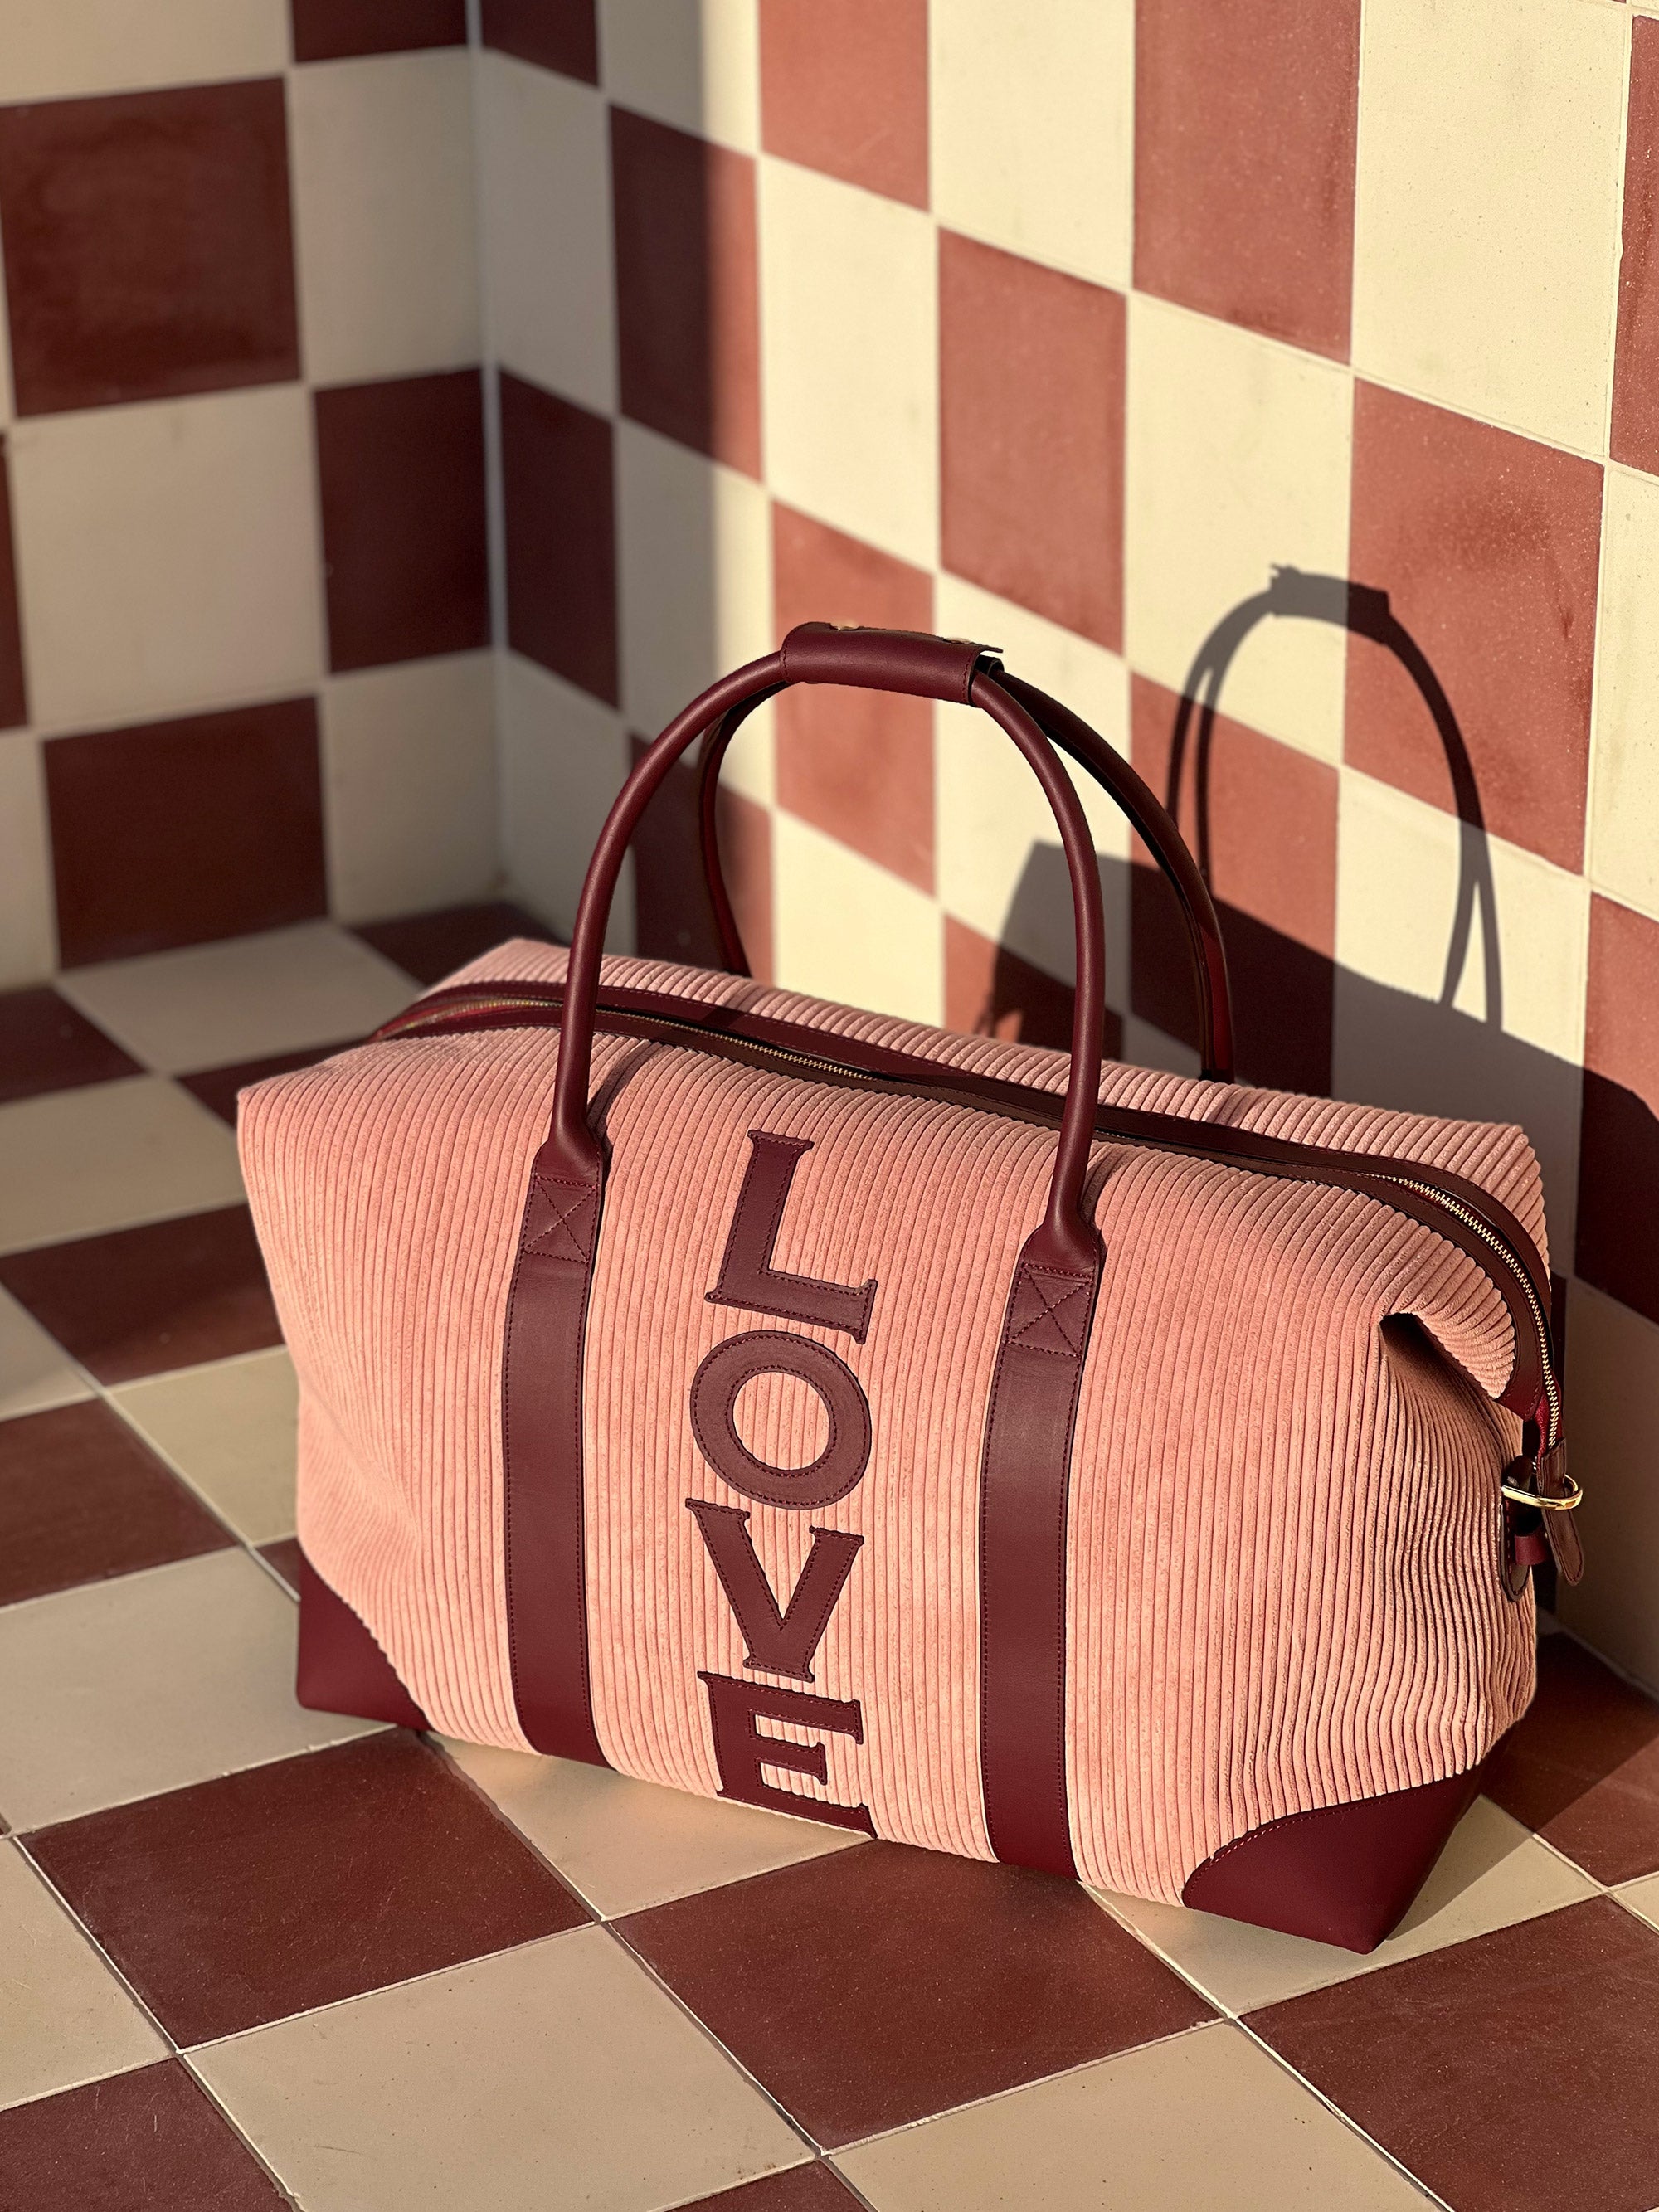 The LOVE Weekend Bag